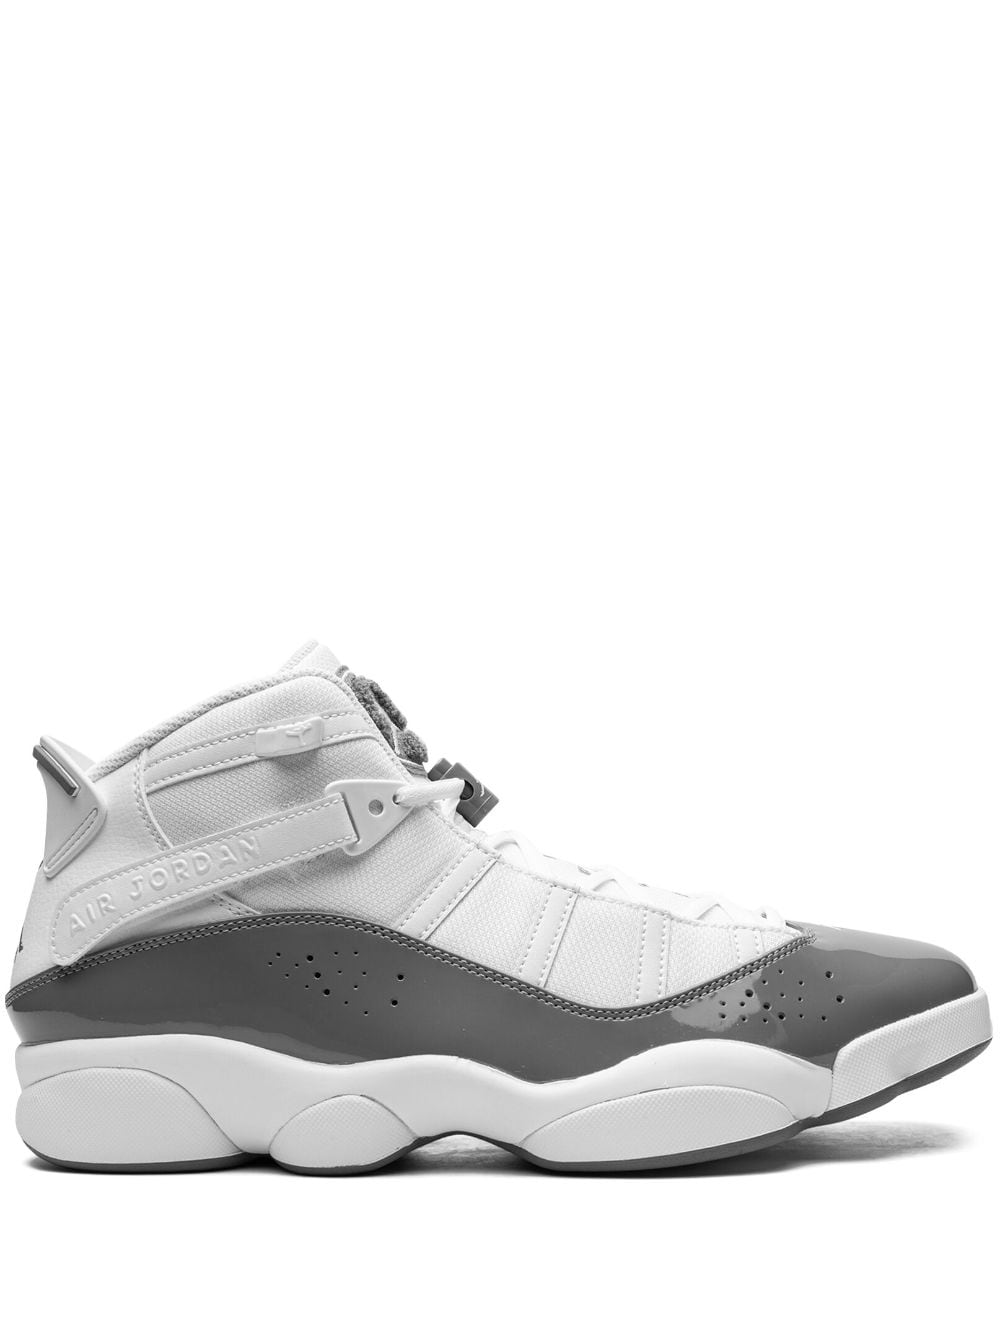 Jordan Jordan 6 Rings sneakers - White